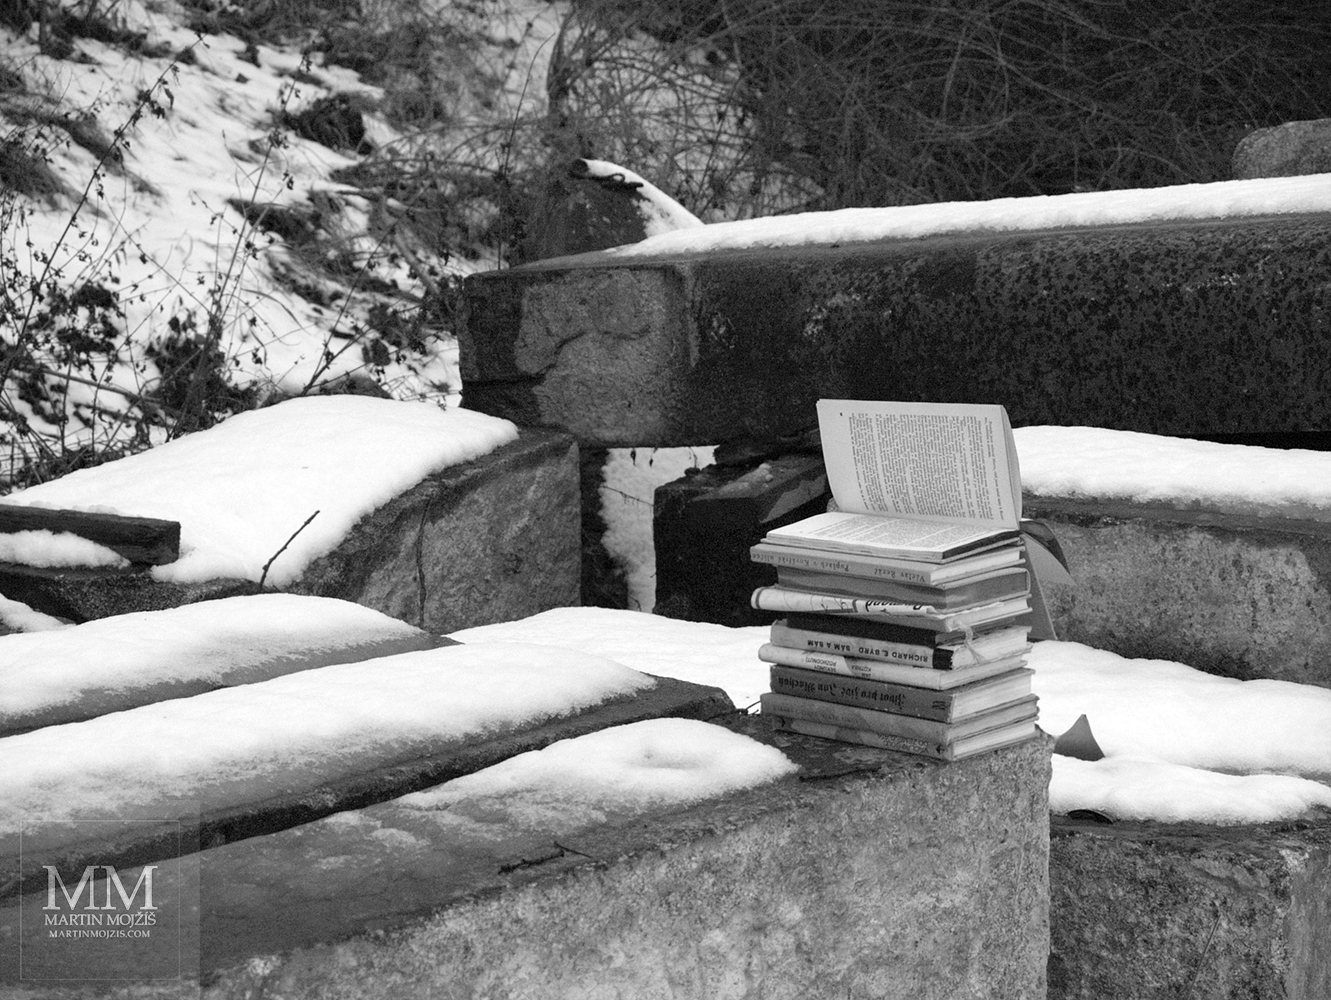 Knihy odložené venku na velkém kamenném kvádru, místy sníh. Fotografie s názvem KNIHY.